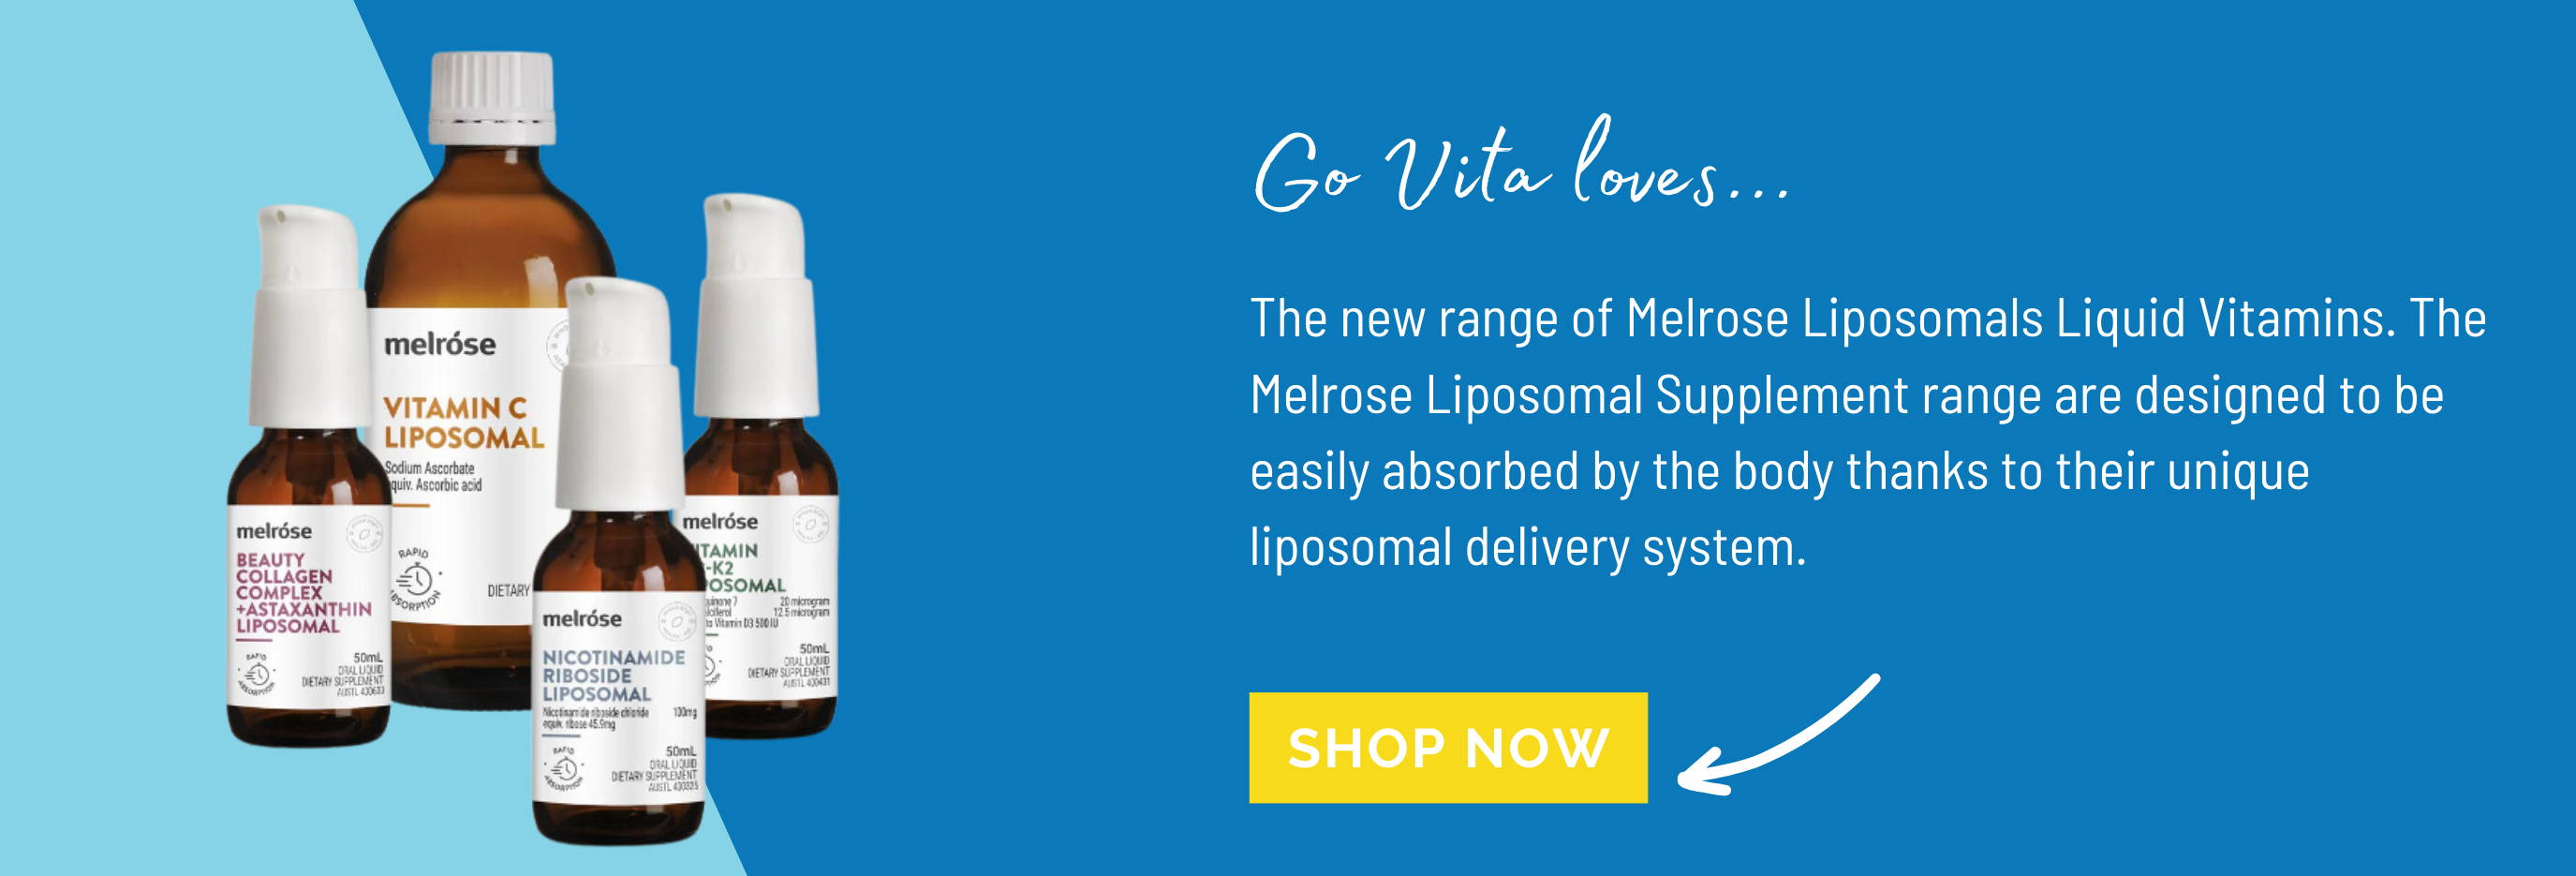 Melrose Liposomals Liquid Vitamins Available from Go Vita